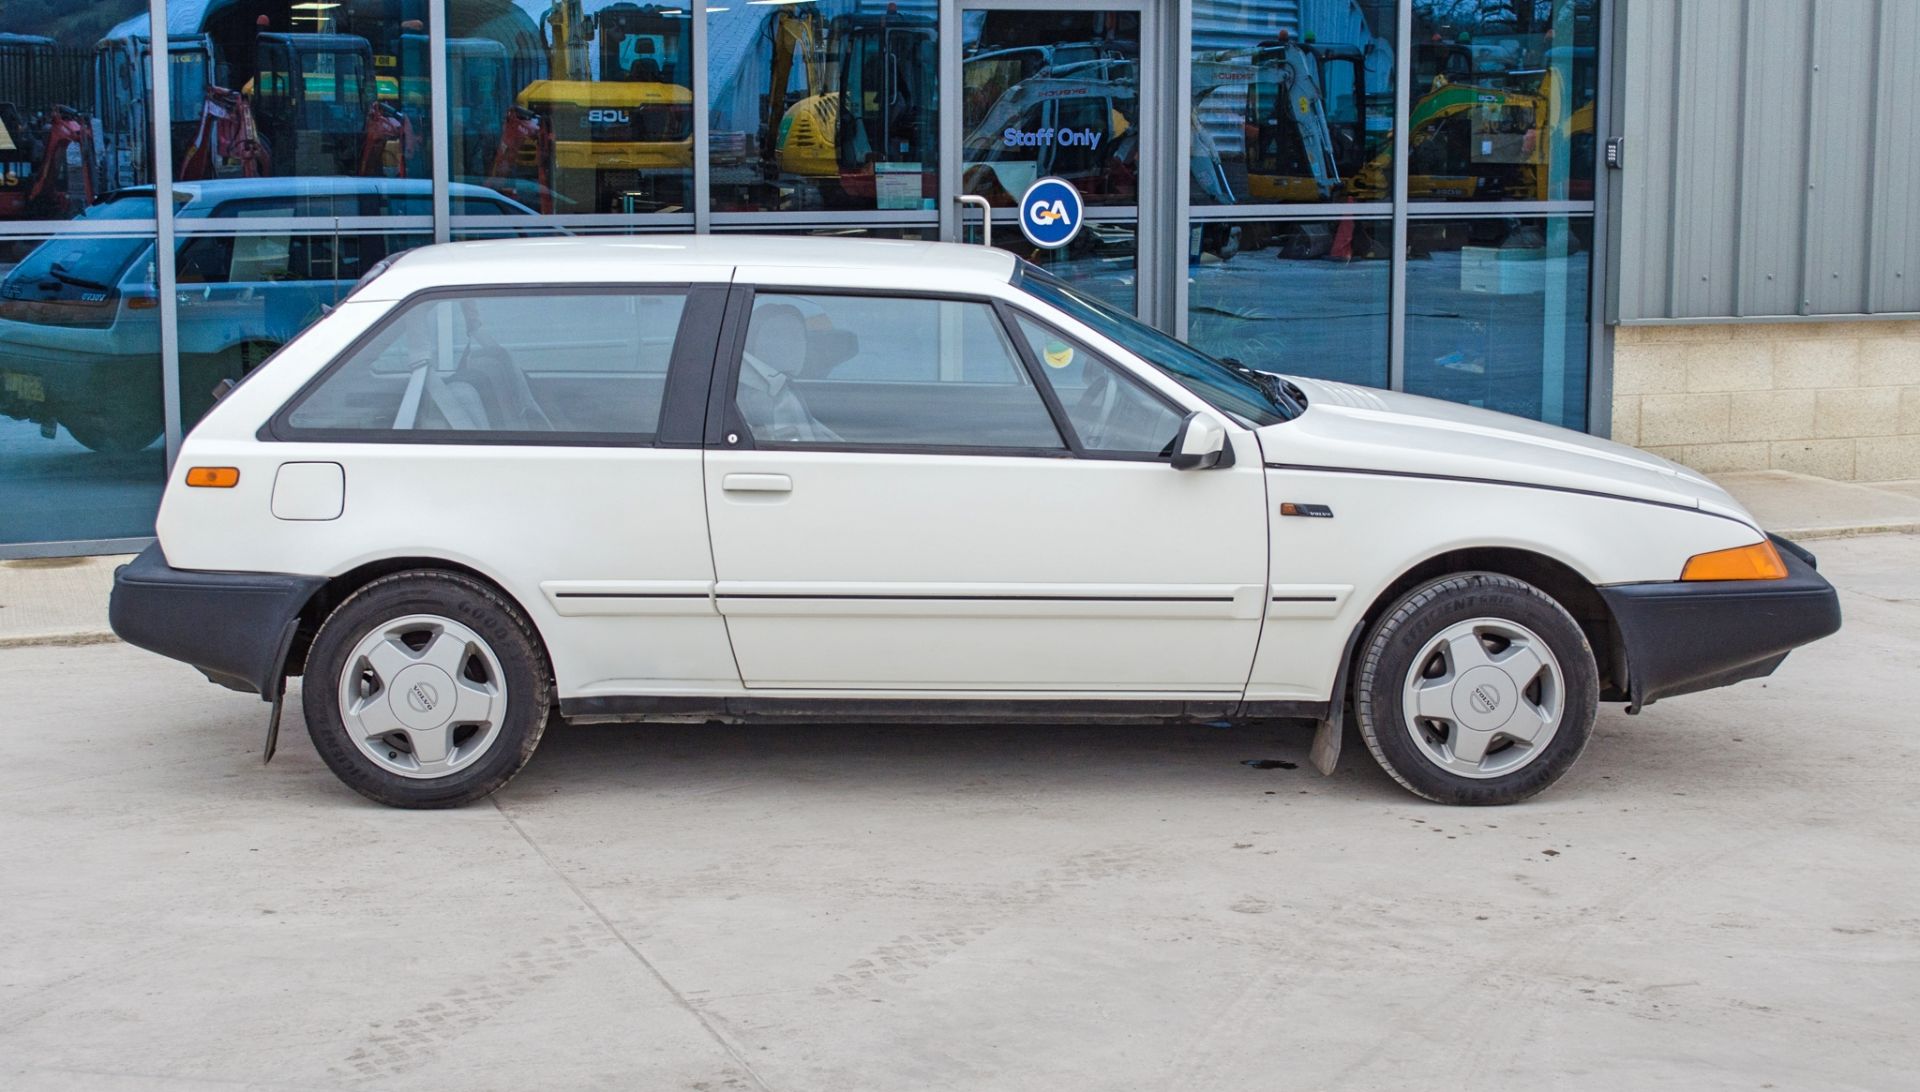 1987 Volvo 480 ES 1721CC 3 door hatchback - Image 14 of 56